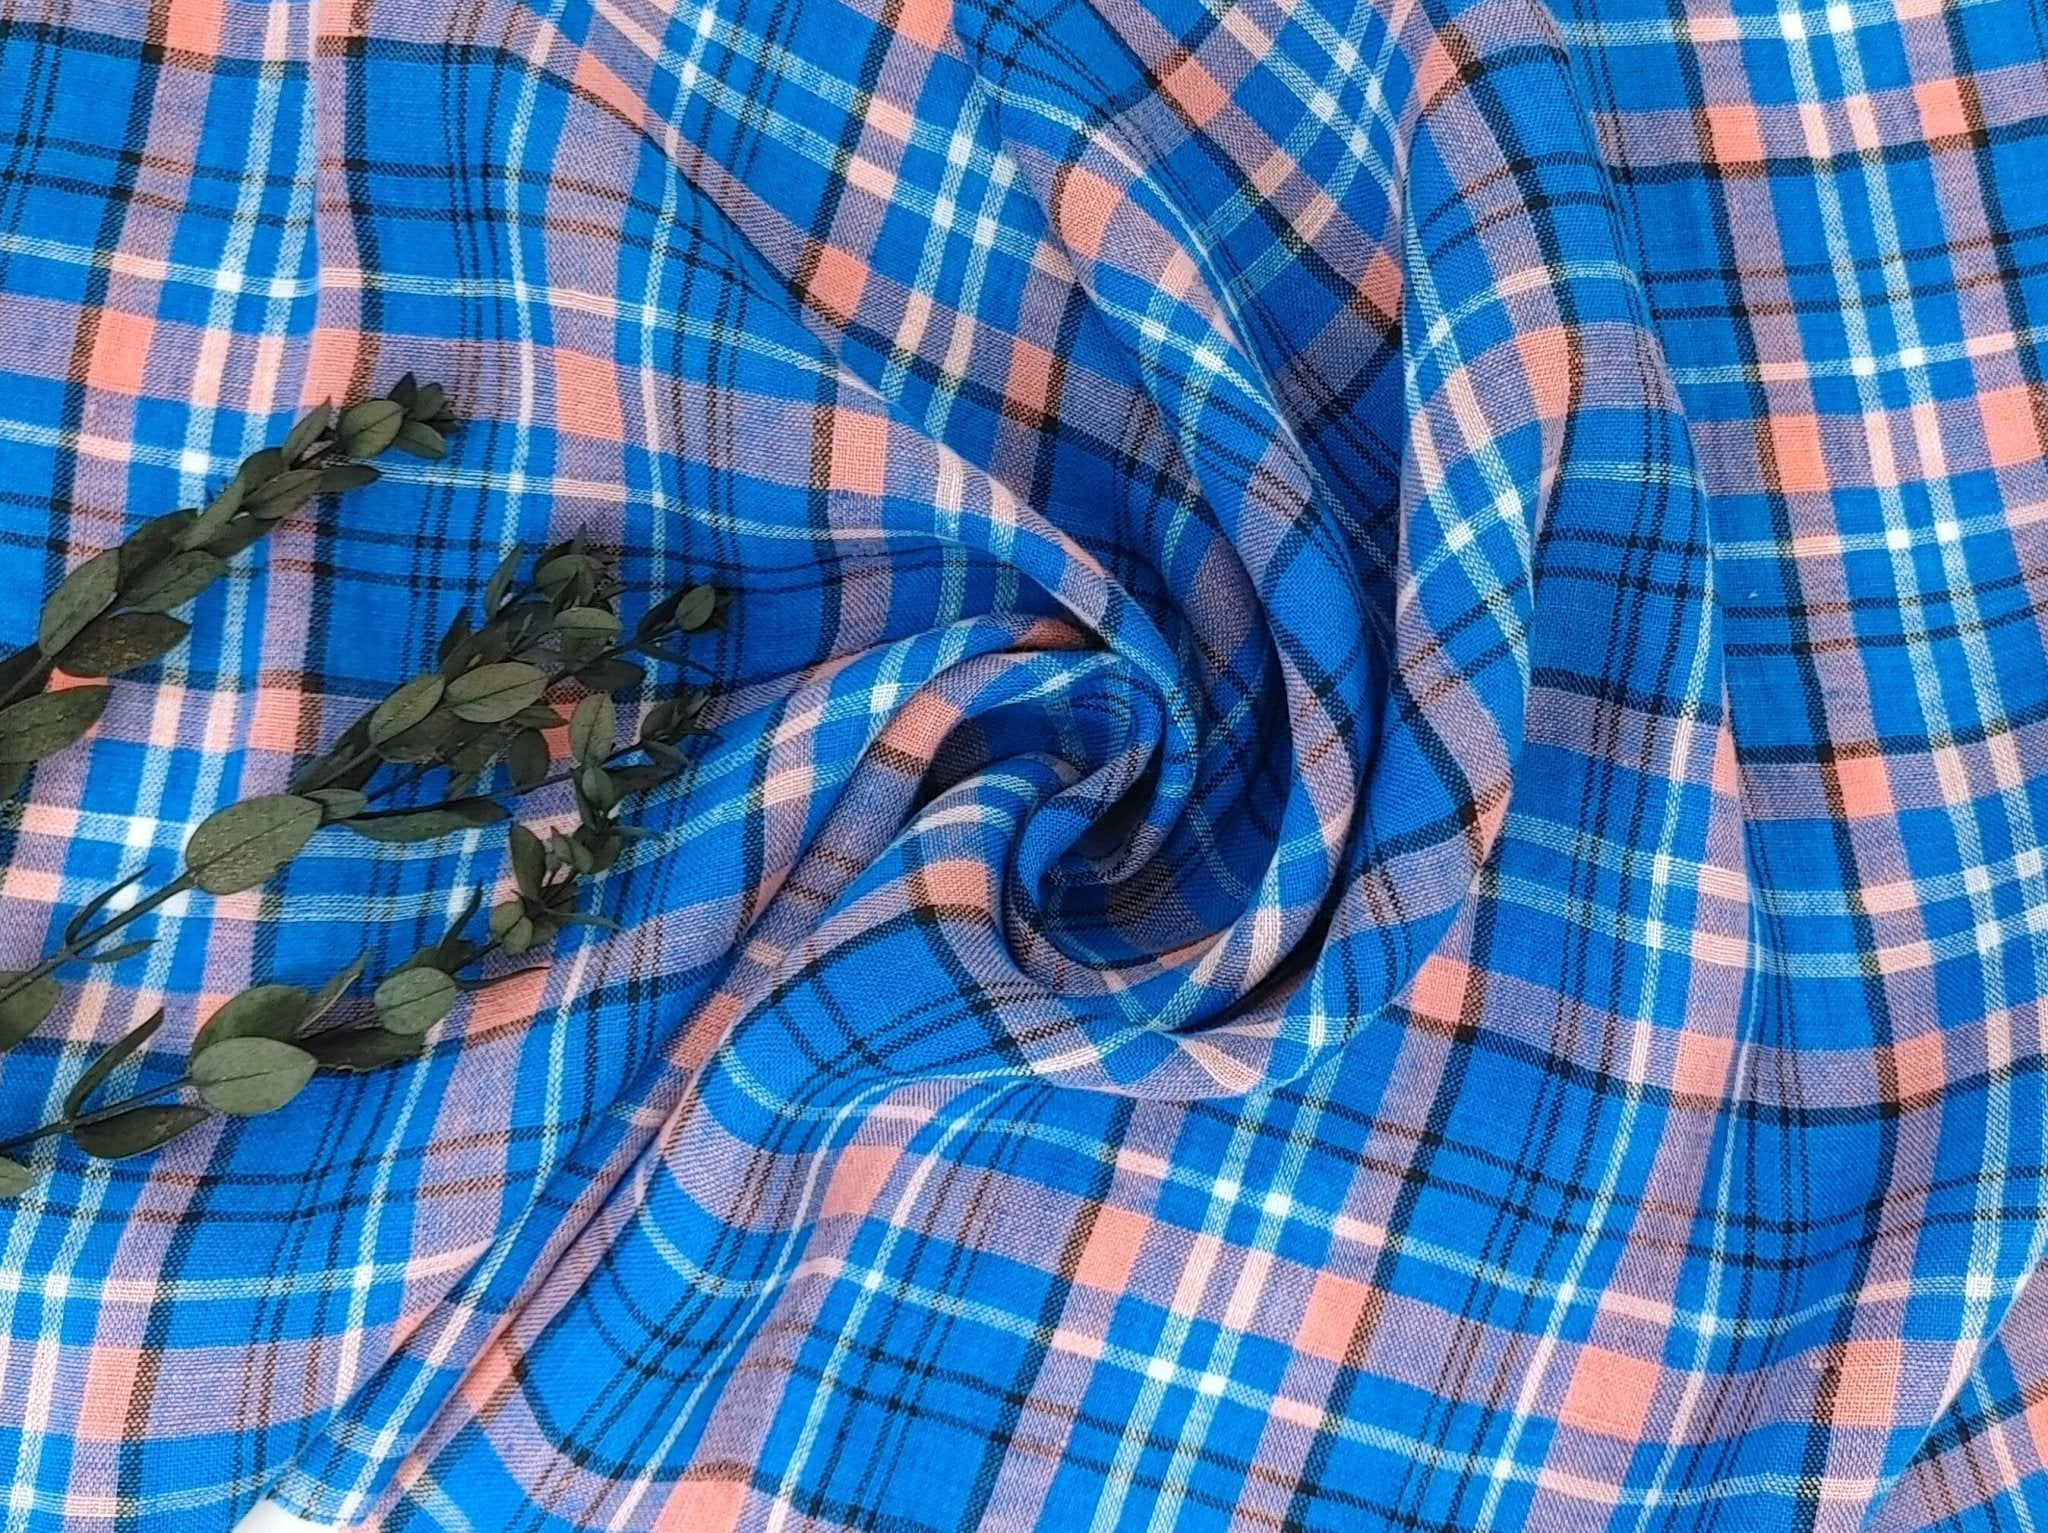 Contemporary Blue Tartan Plaid: 100% Linen Fabric, Medium-Light Weight 7570 - The Linen Lab - Blue